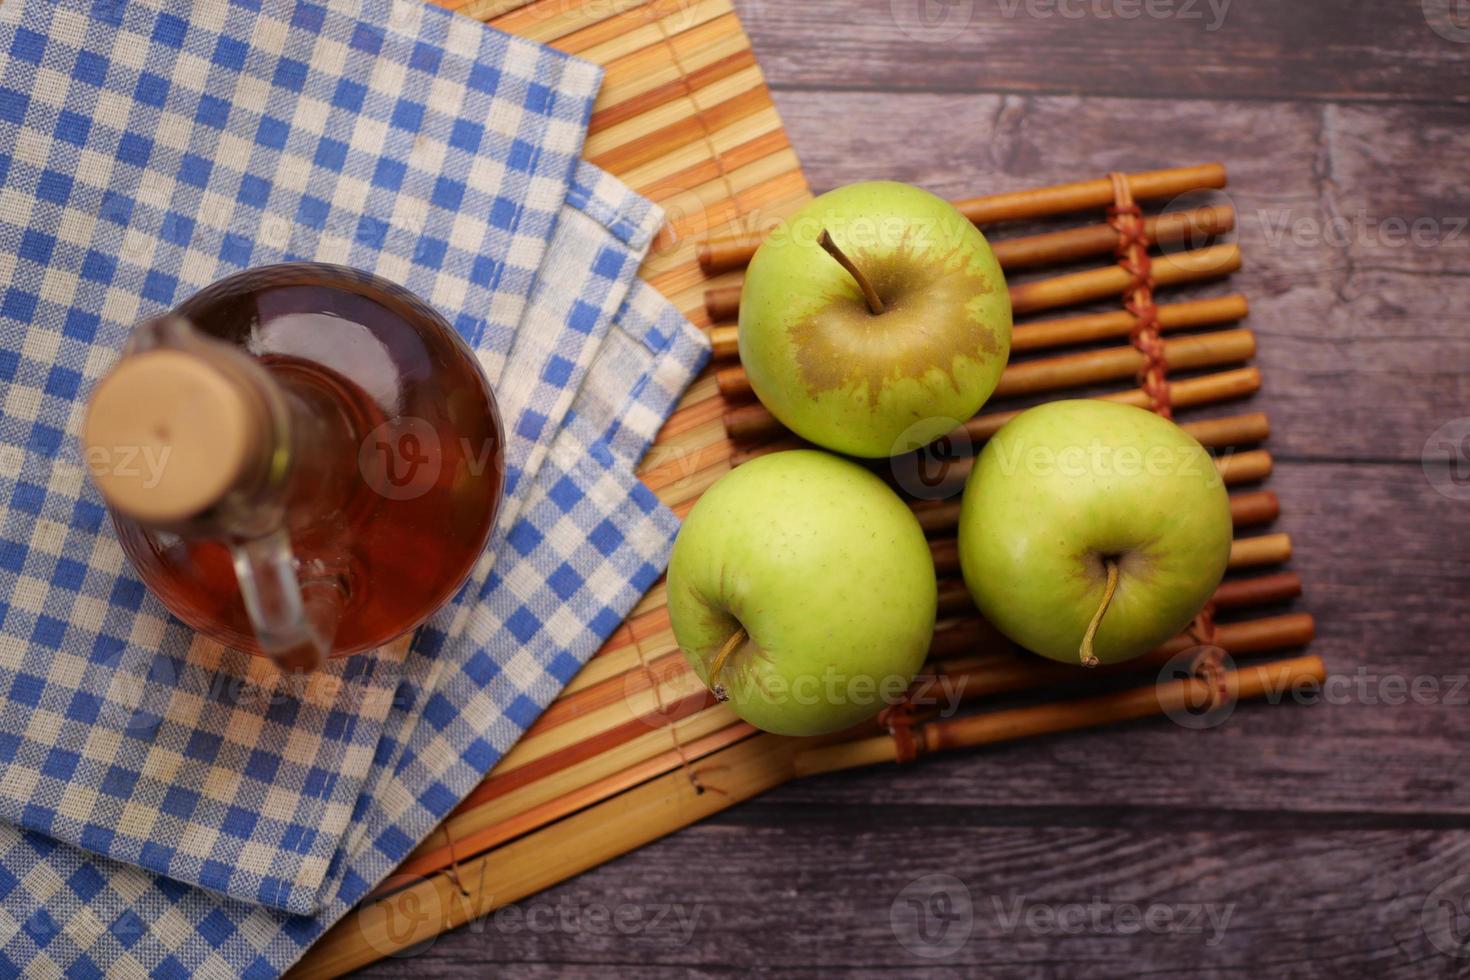 Vinagre de manzana en botella de vidrio con manzana verde fresca en la mesa foto